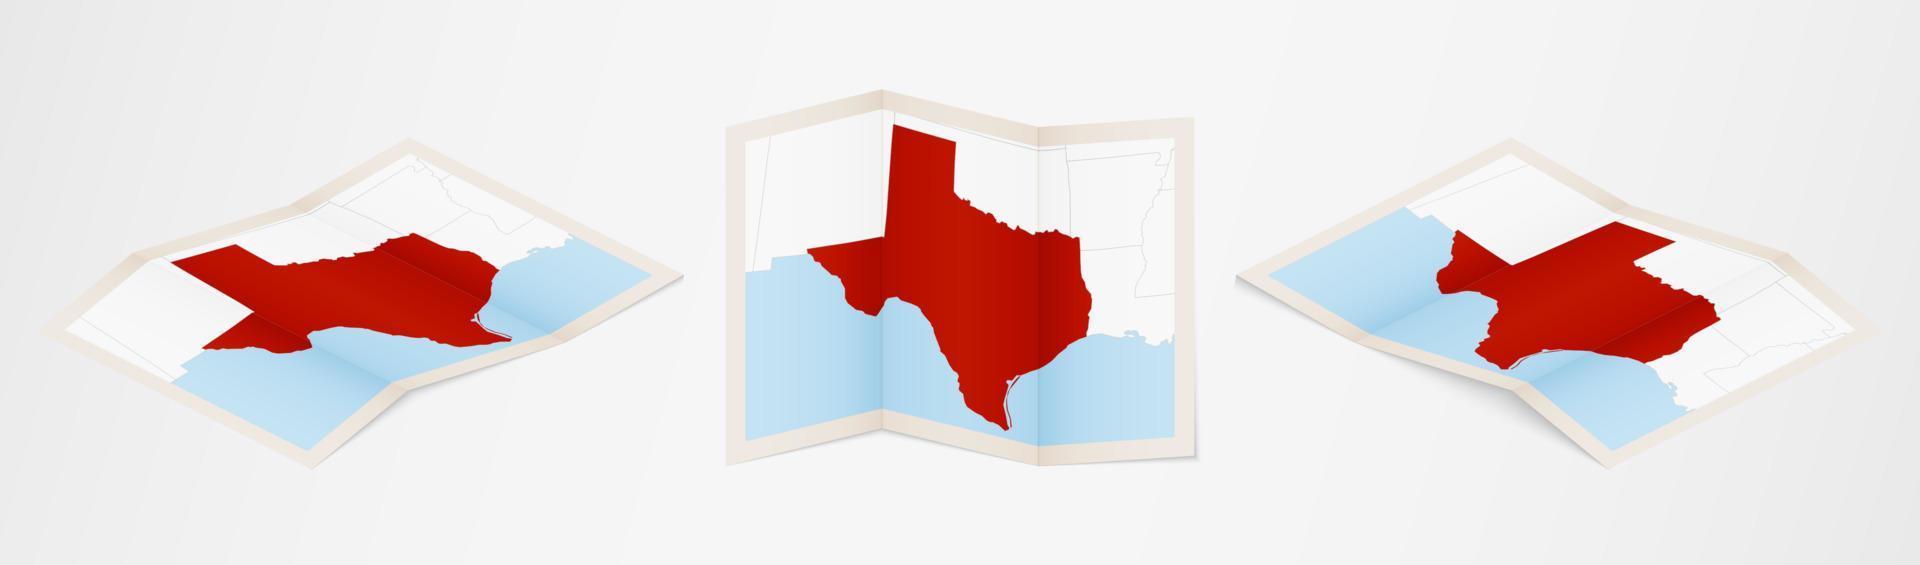 mapa plegado de texas en tres versiones diferentes. vector